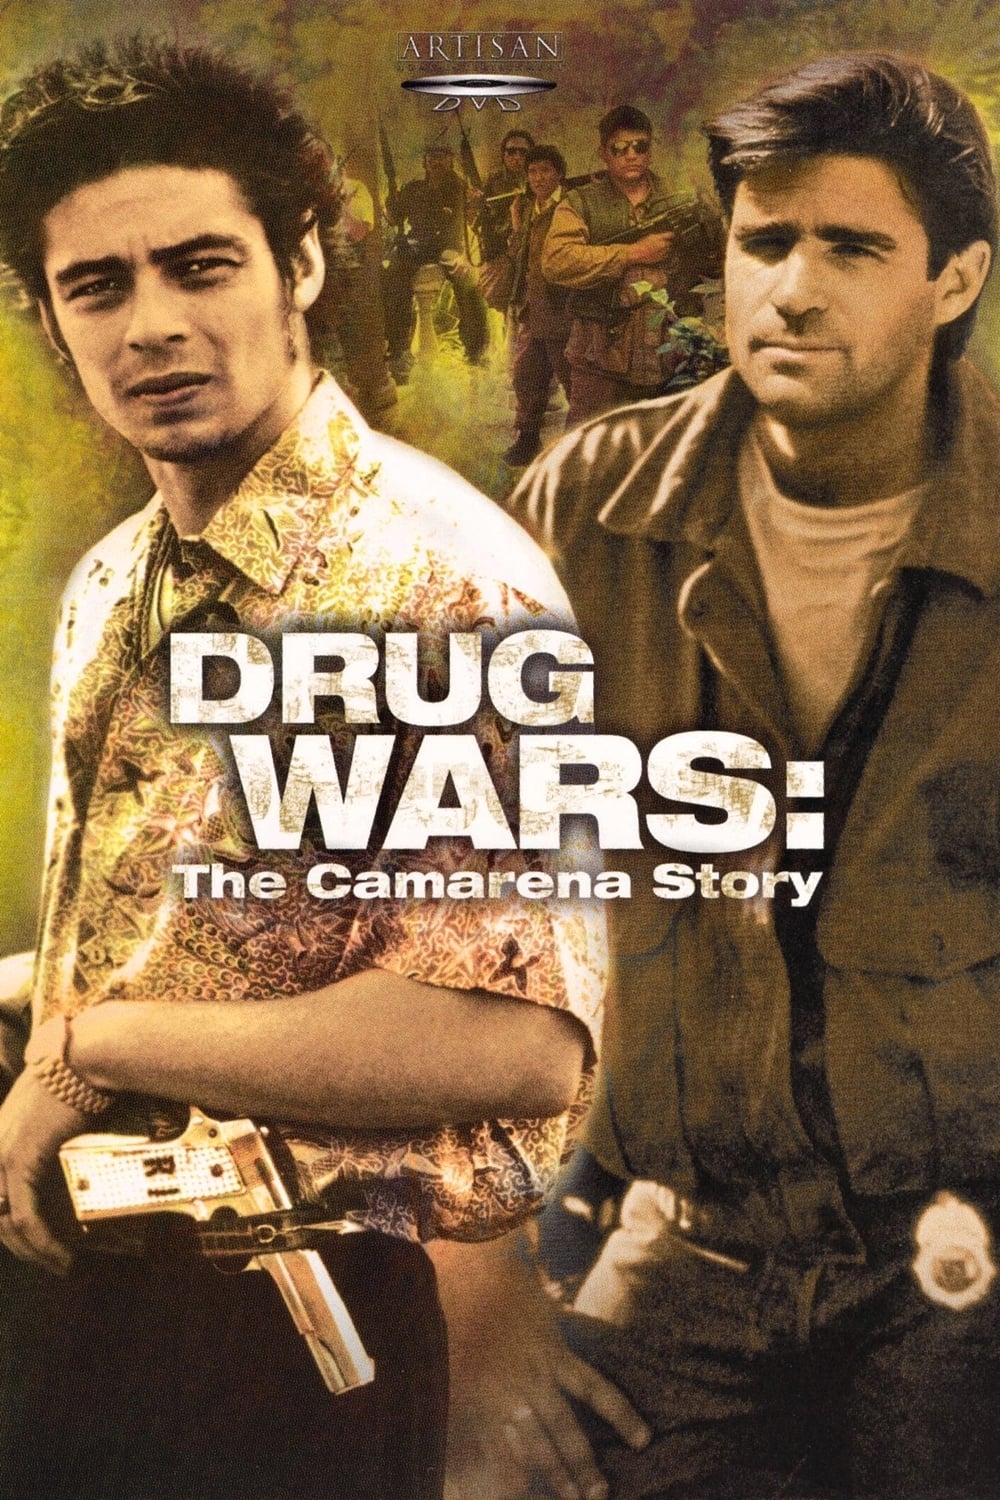 Drug Wars: The Camarena Story TV Shows About Drug War